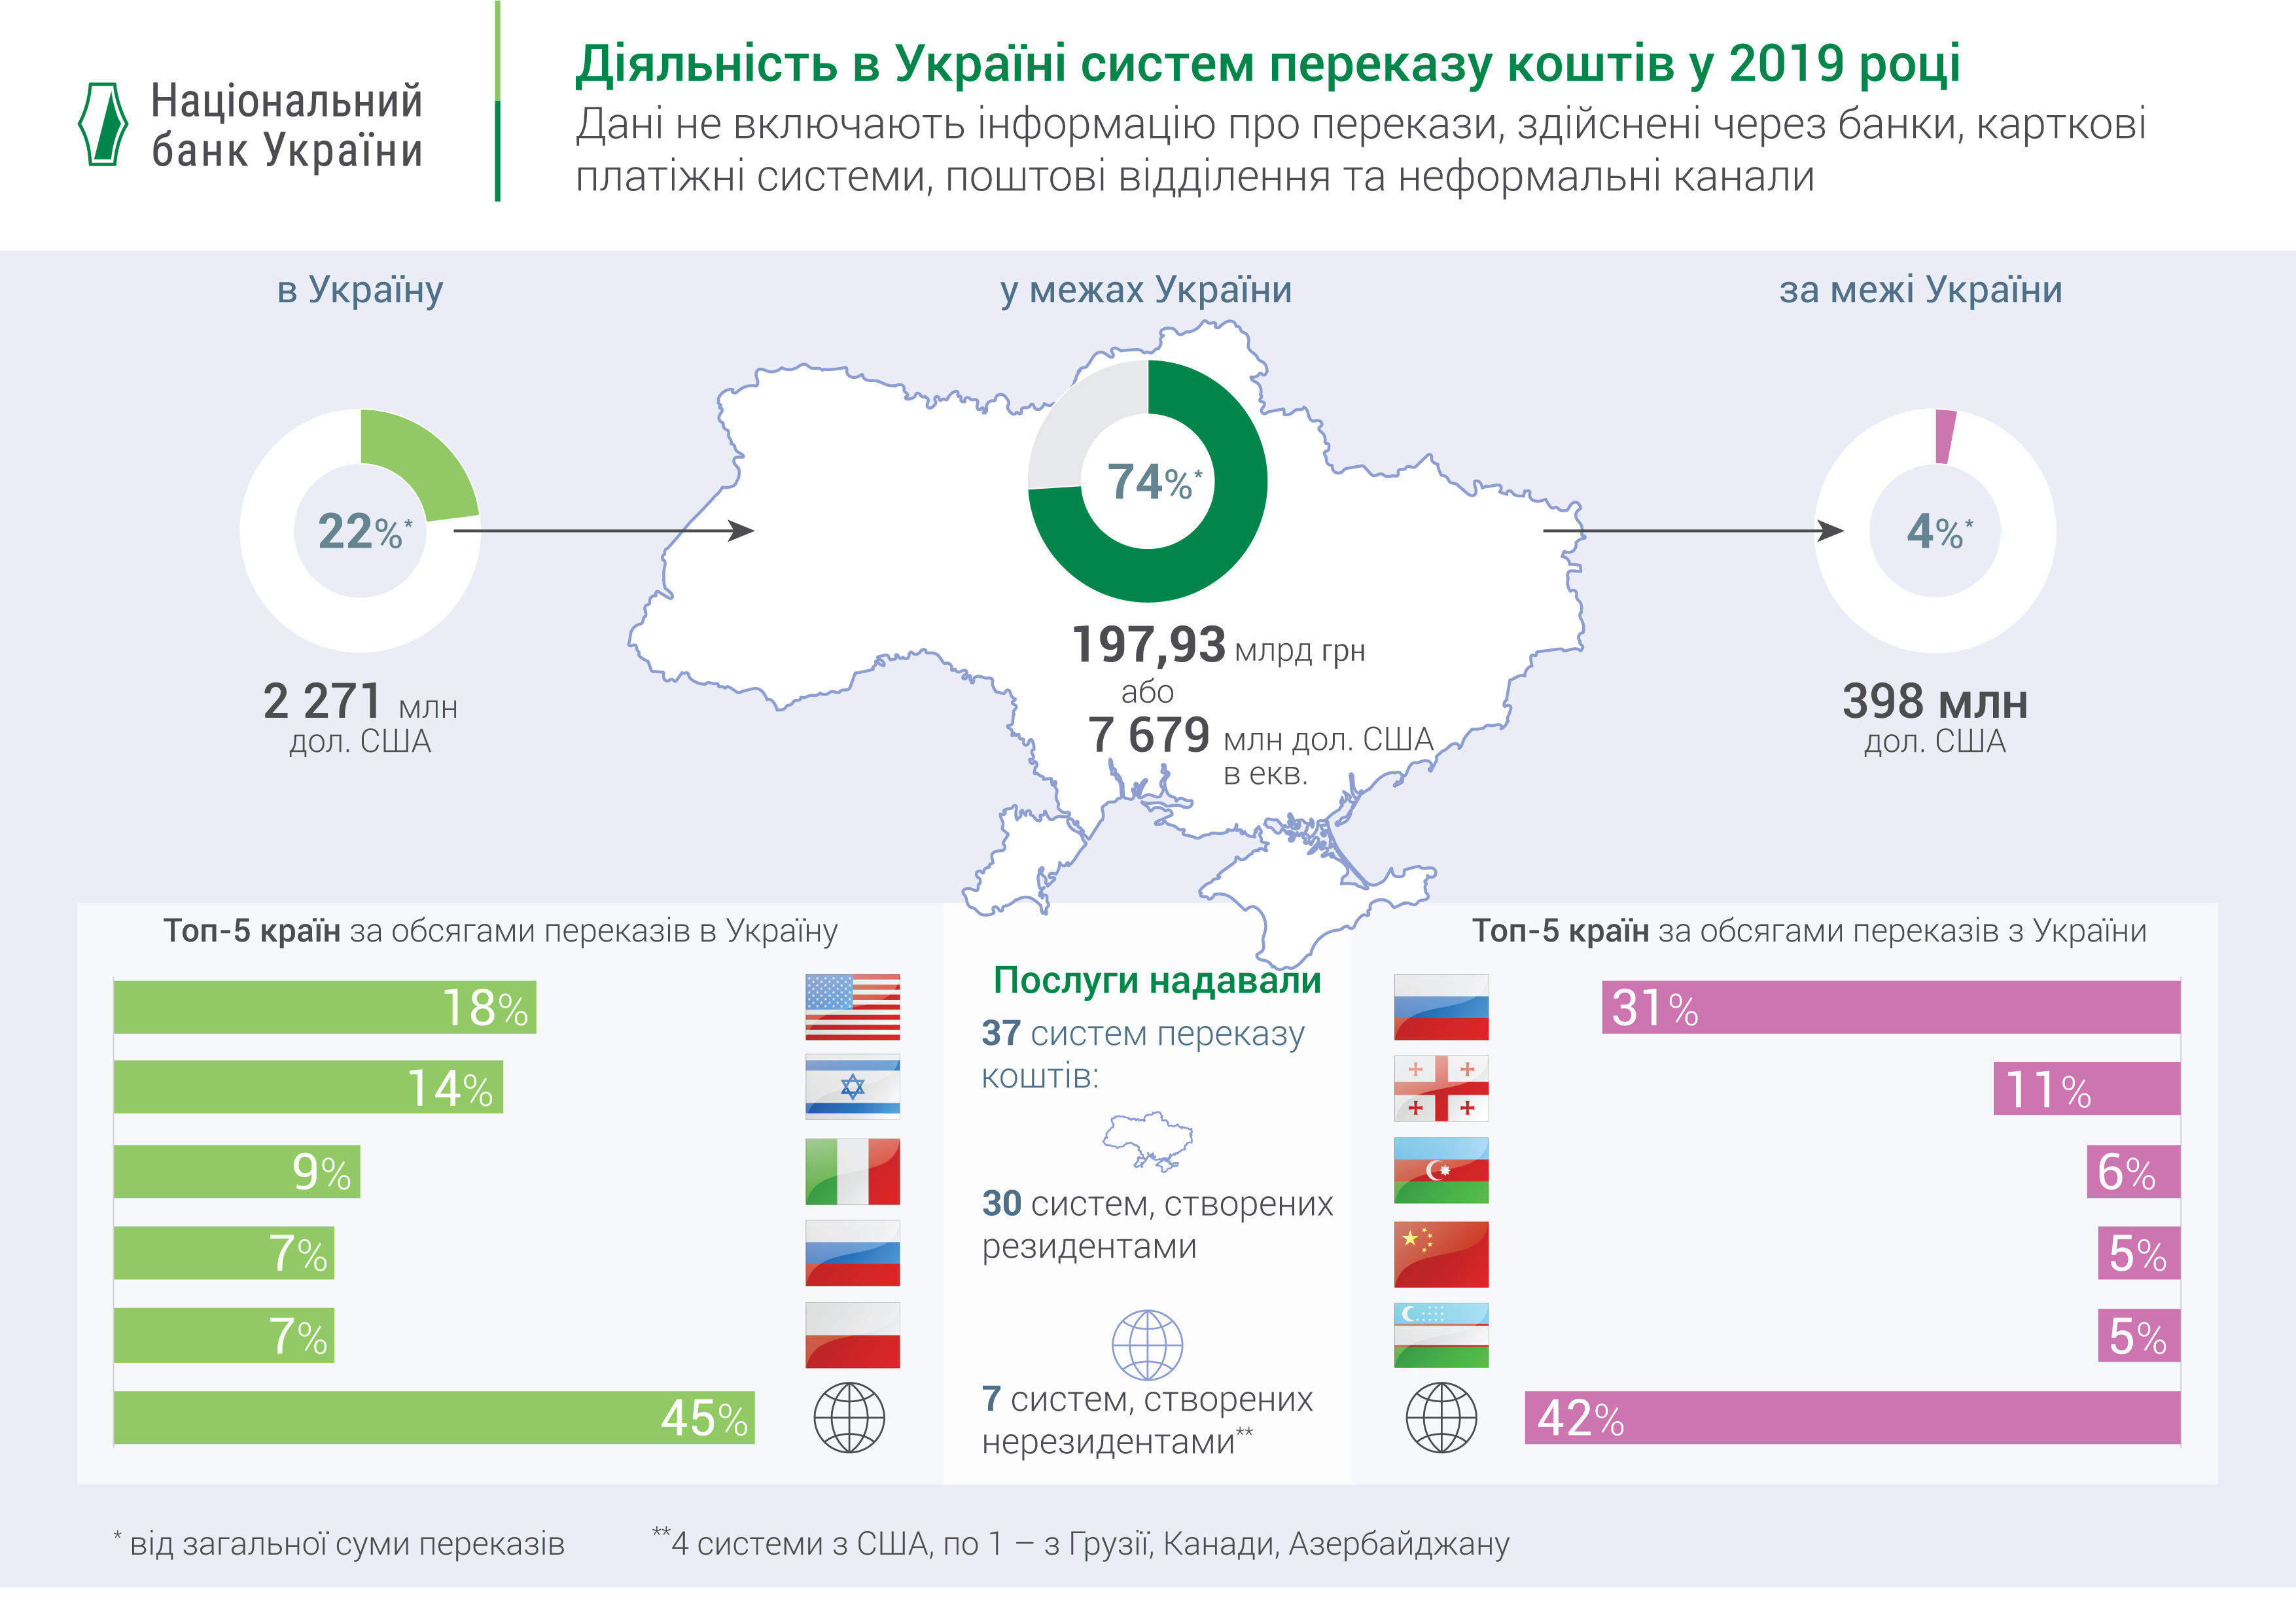 Обсяг переказів в межах України у 2019 році зріс майже на 40%